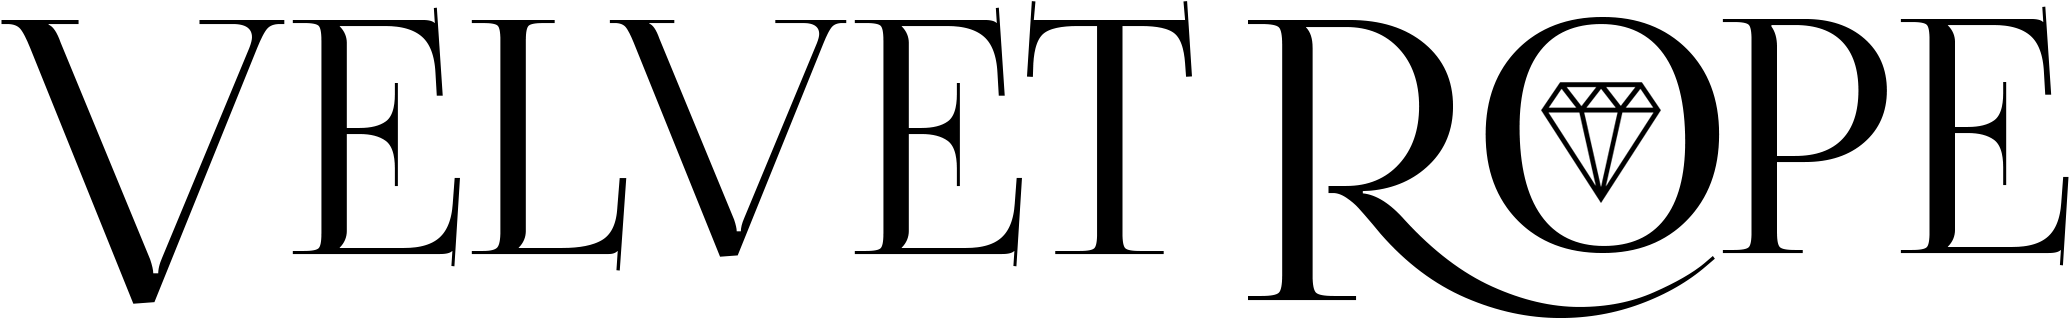 Velvet Rope Logo Design PNG